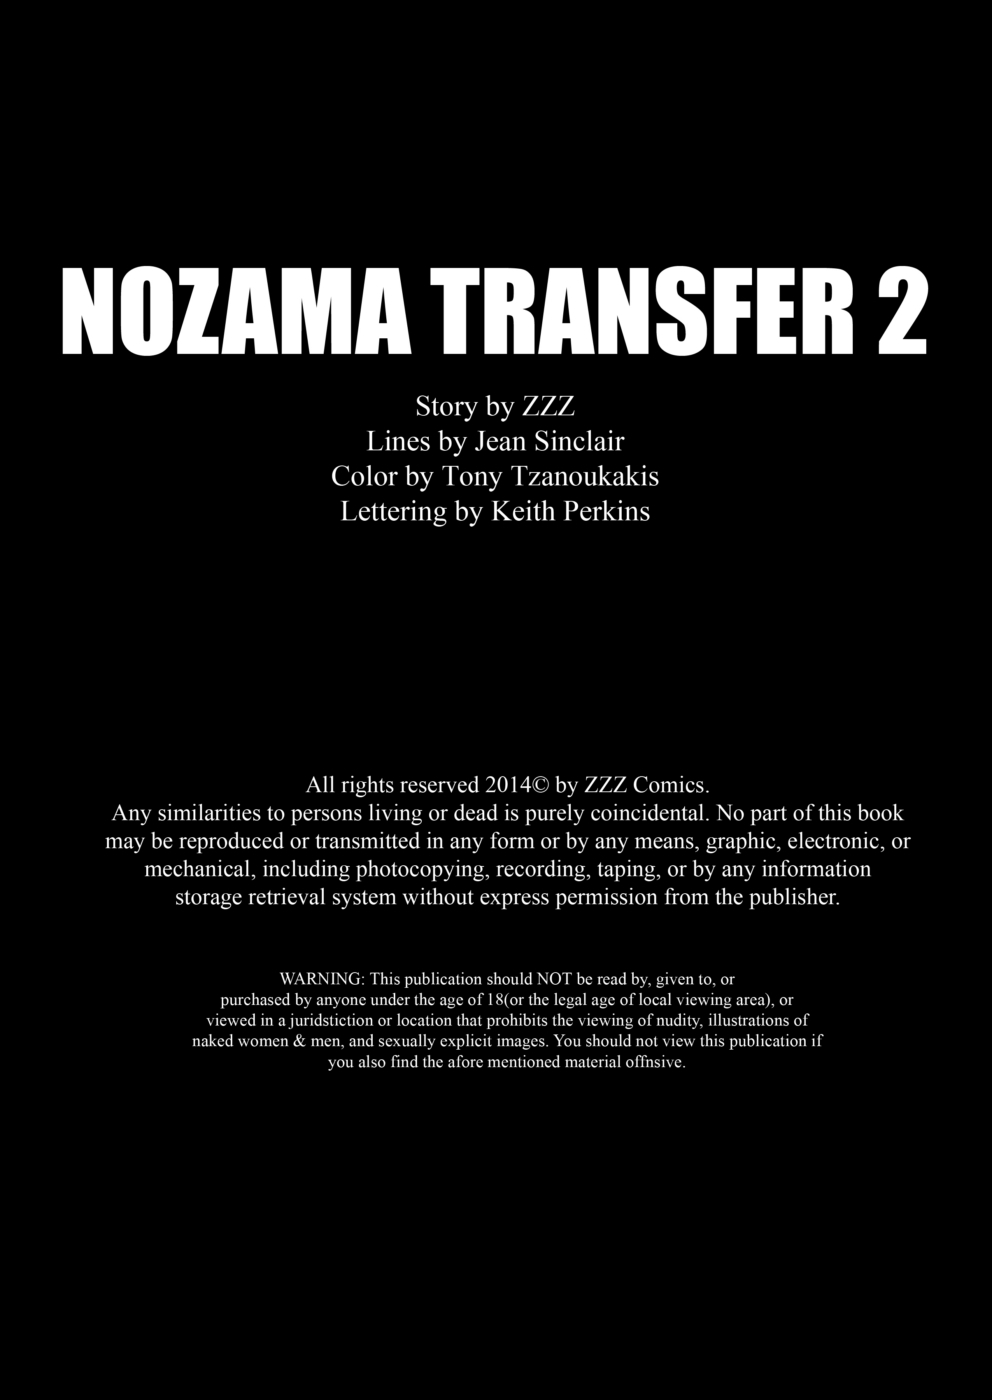 ззз nozama перевод 2